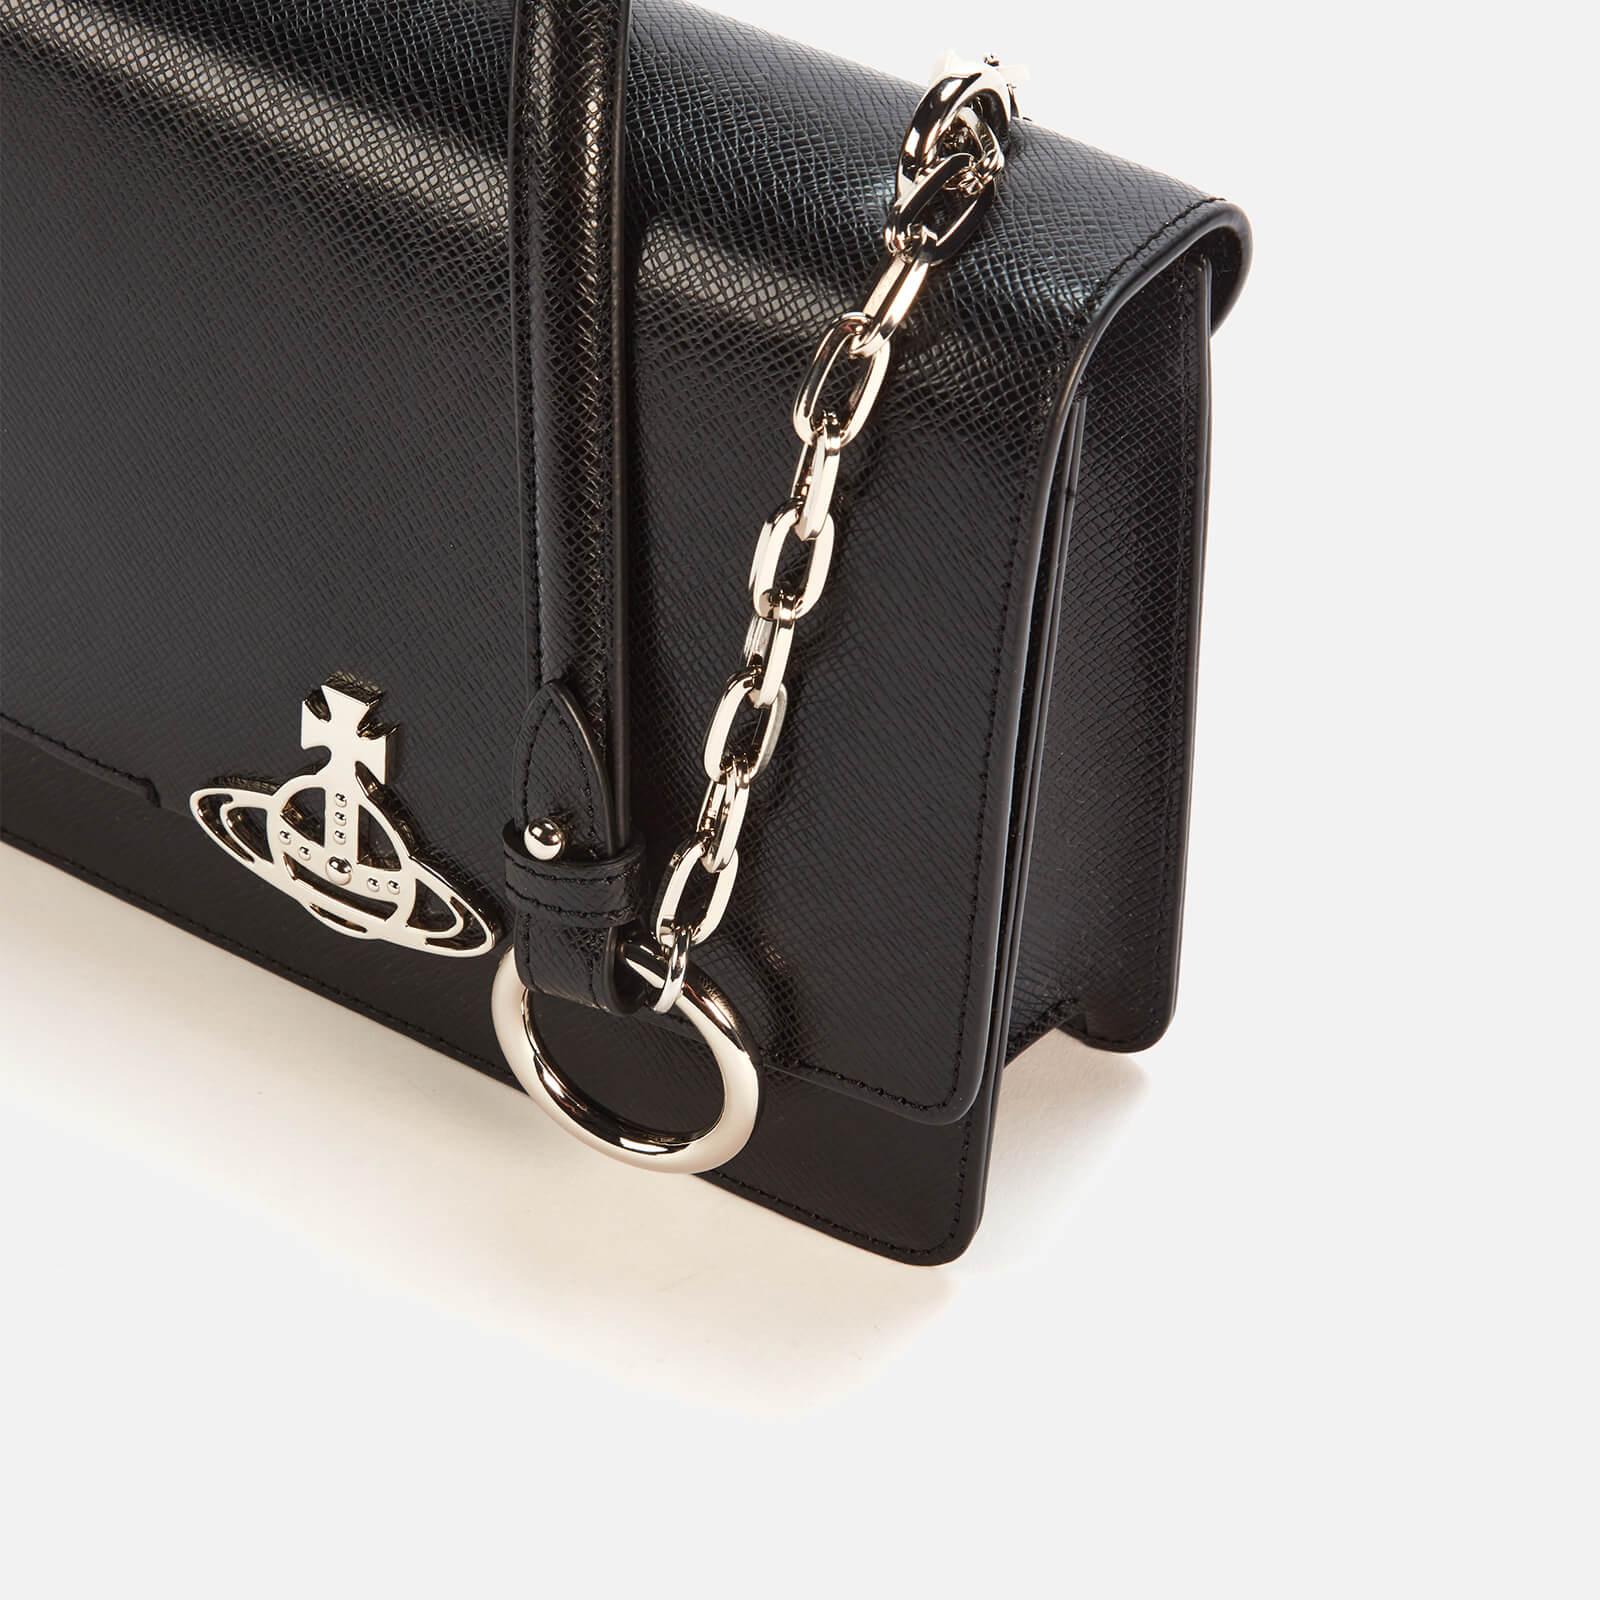 Vivienne Westwood Leather Debbie Medium Bag With Flap in Black 